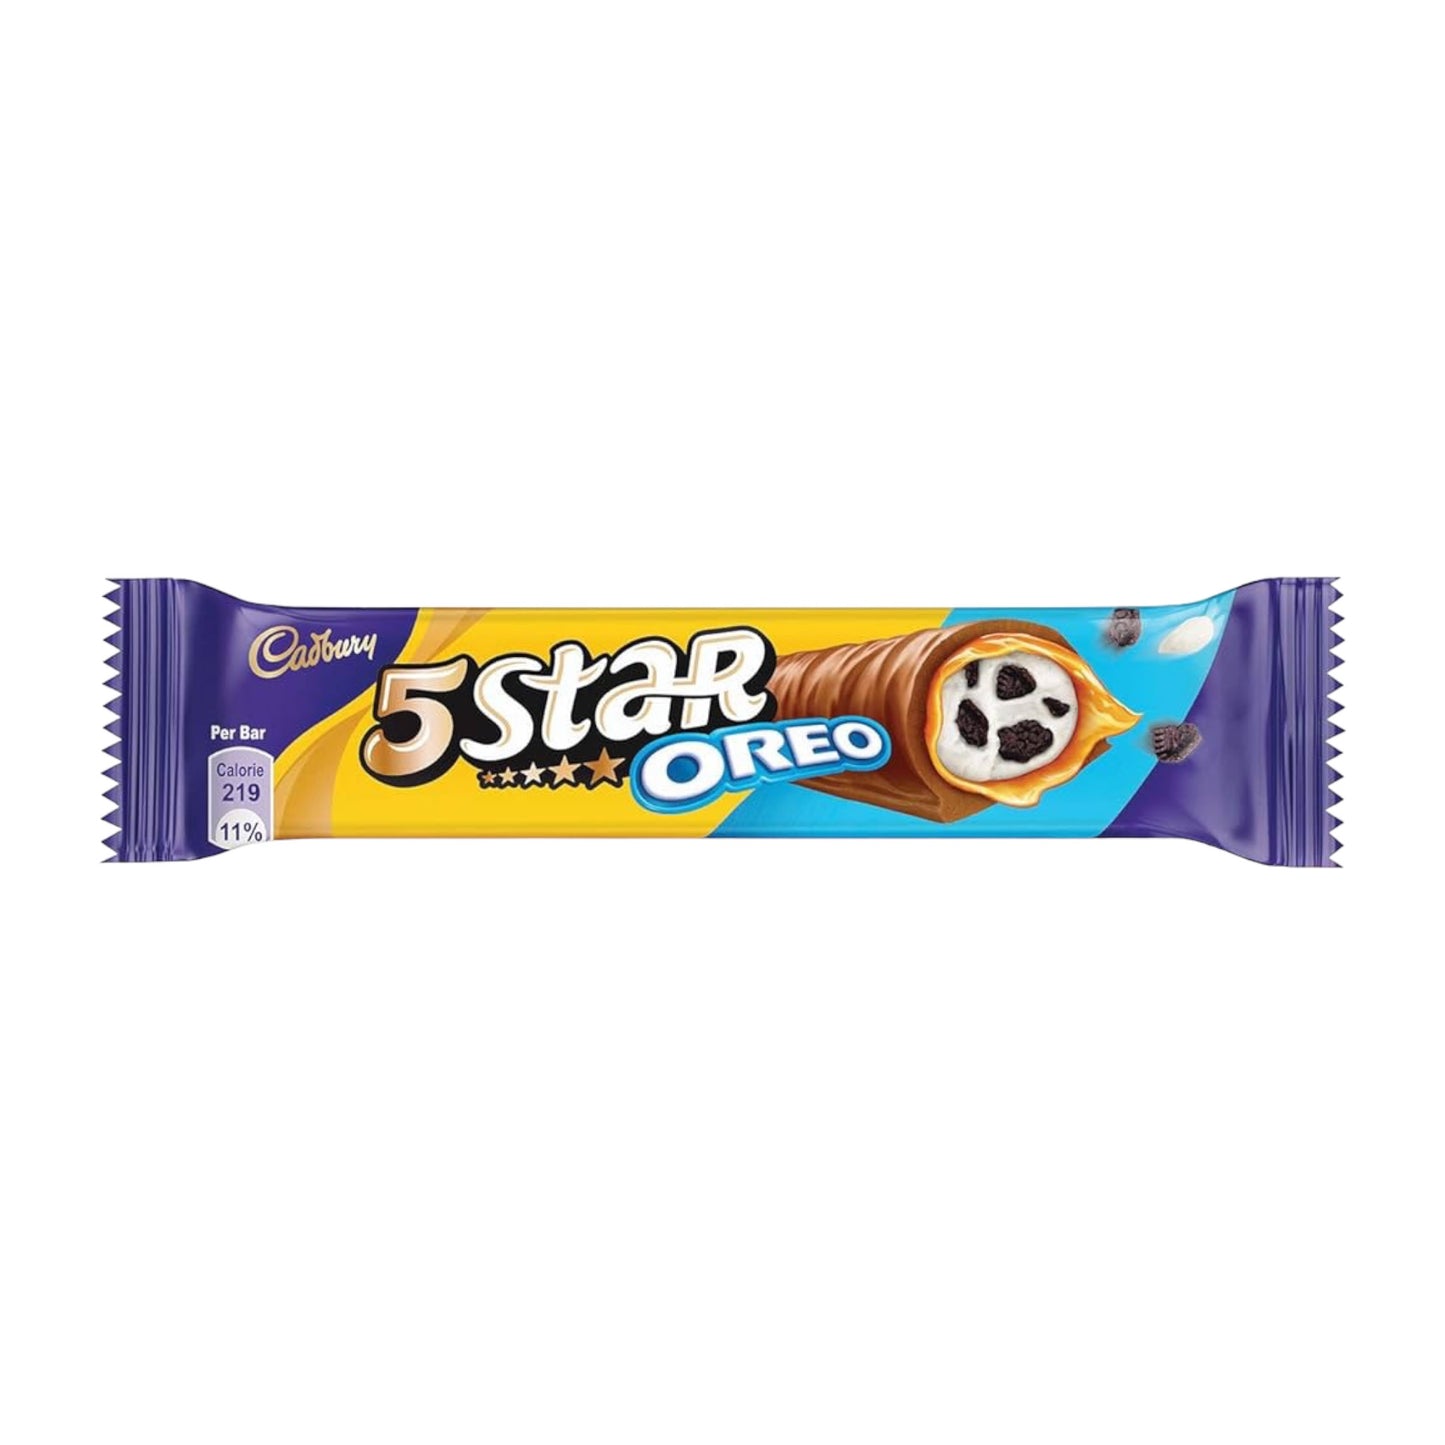 Cadbury's 5 Star Oreo - 42g (India)